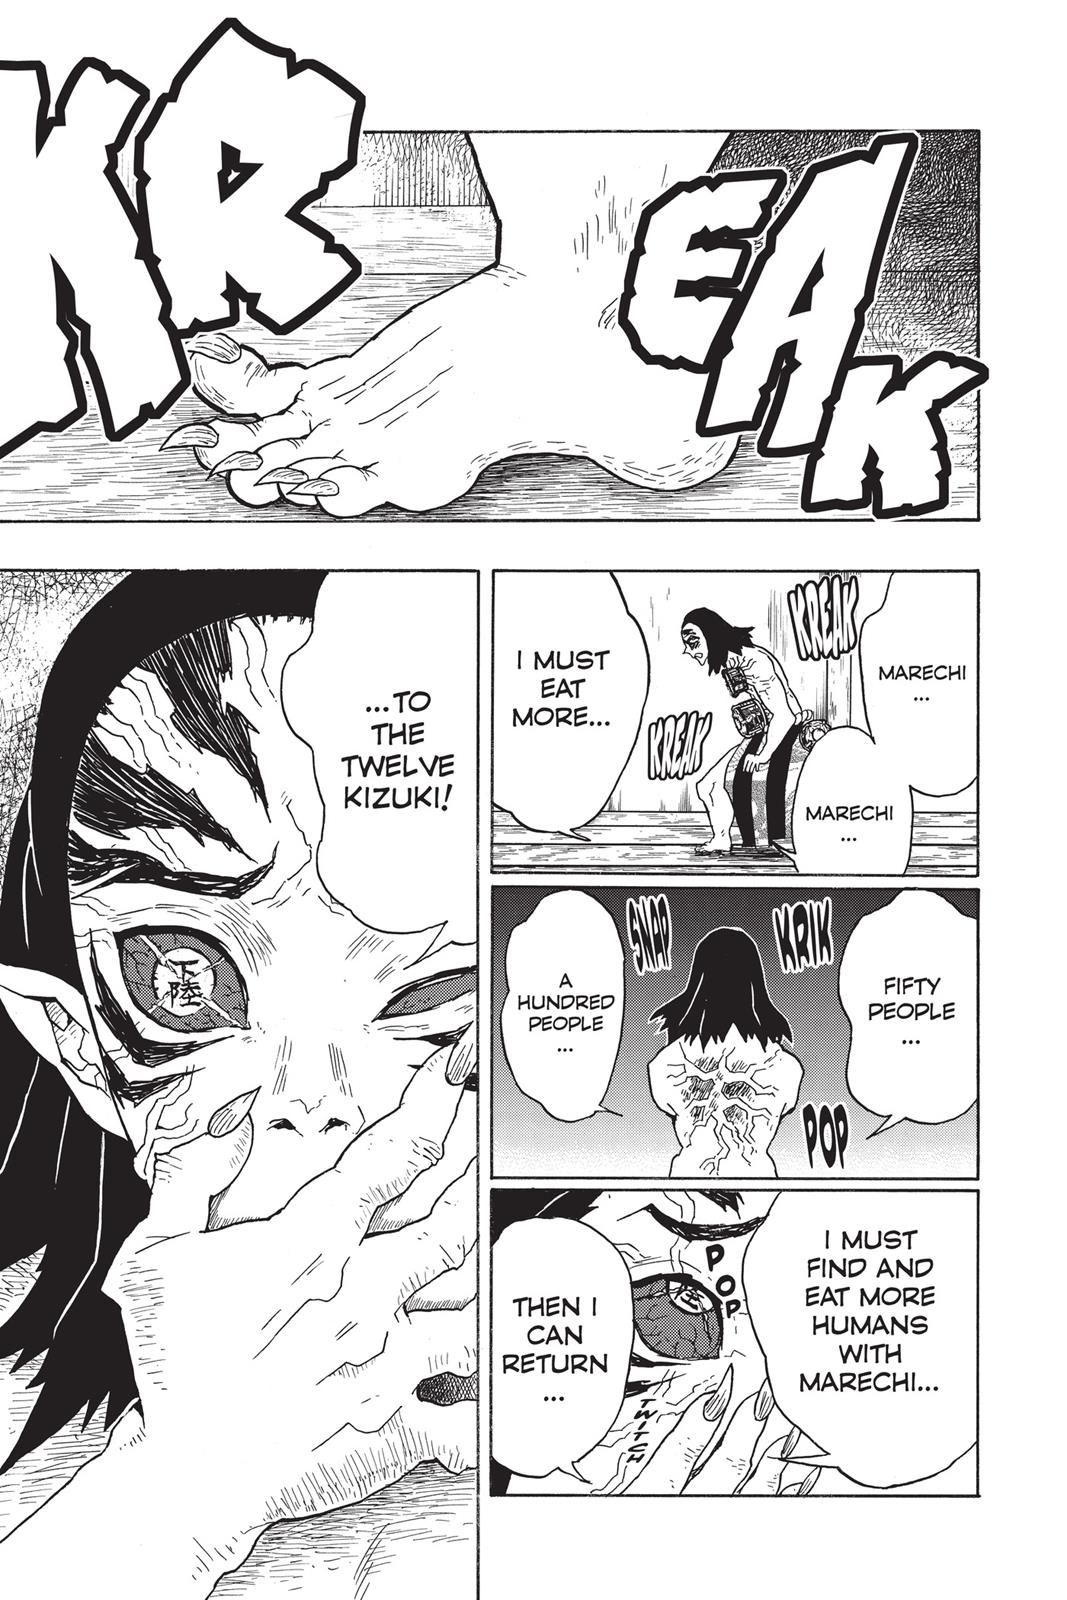 Demon Slayer Manga Manga Chapter - 23 - image 14